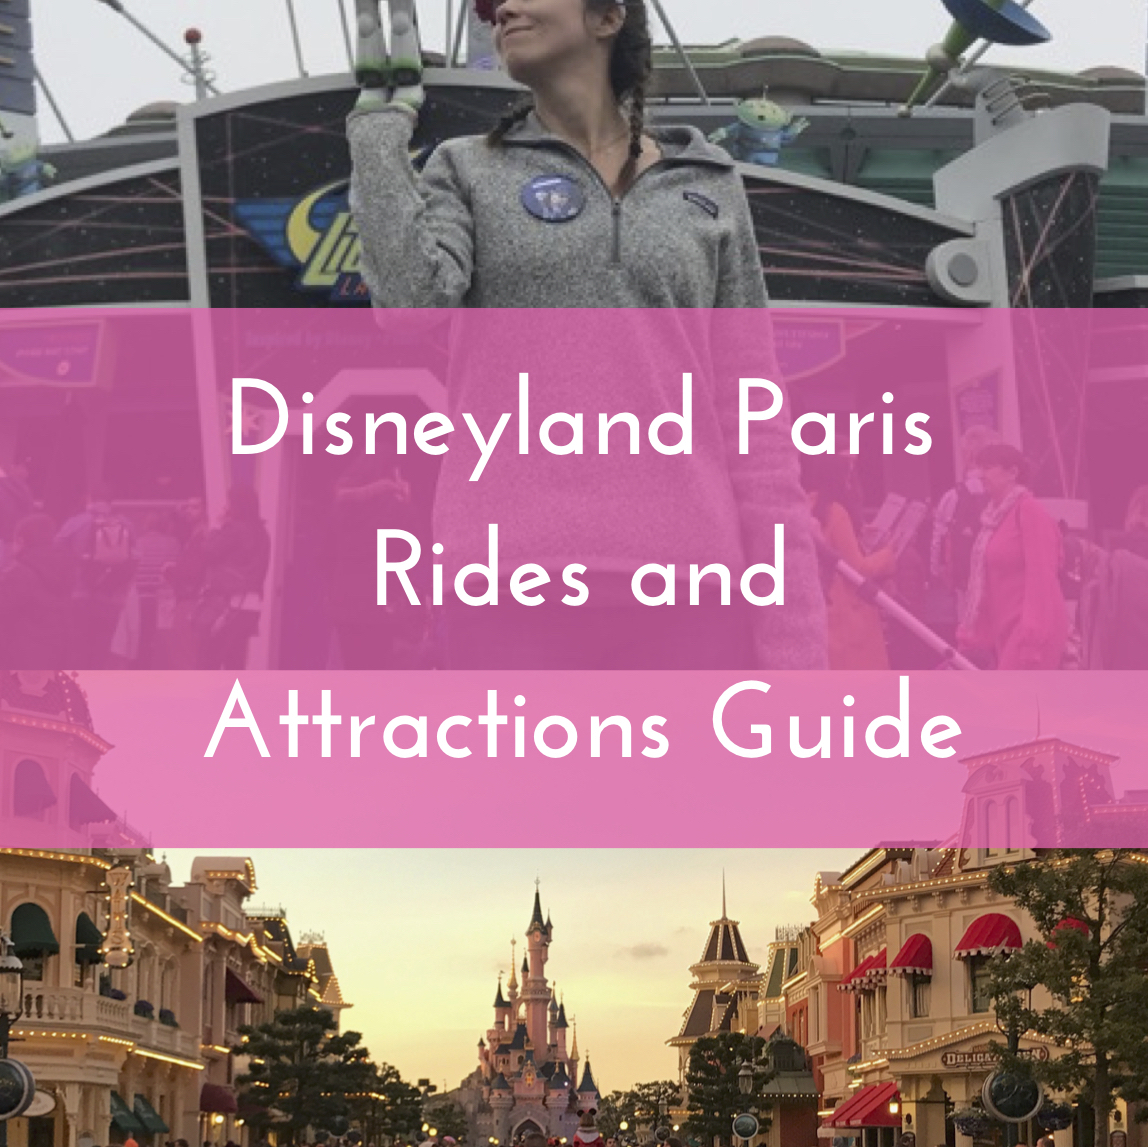 Guía de atracciones y paseos de Disneyland París